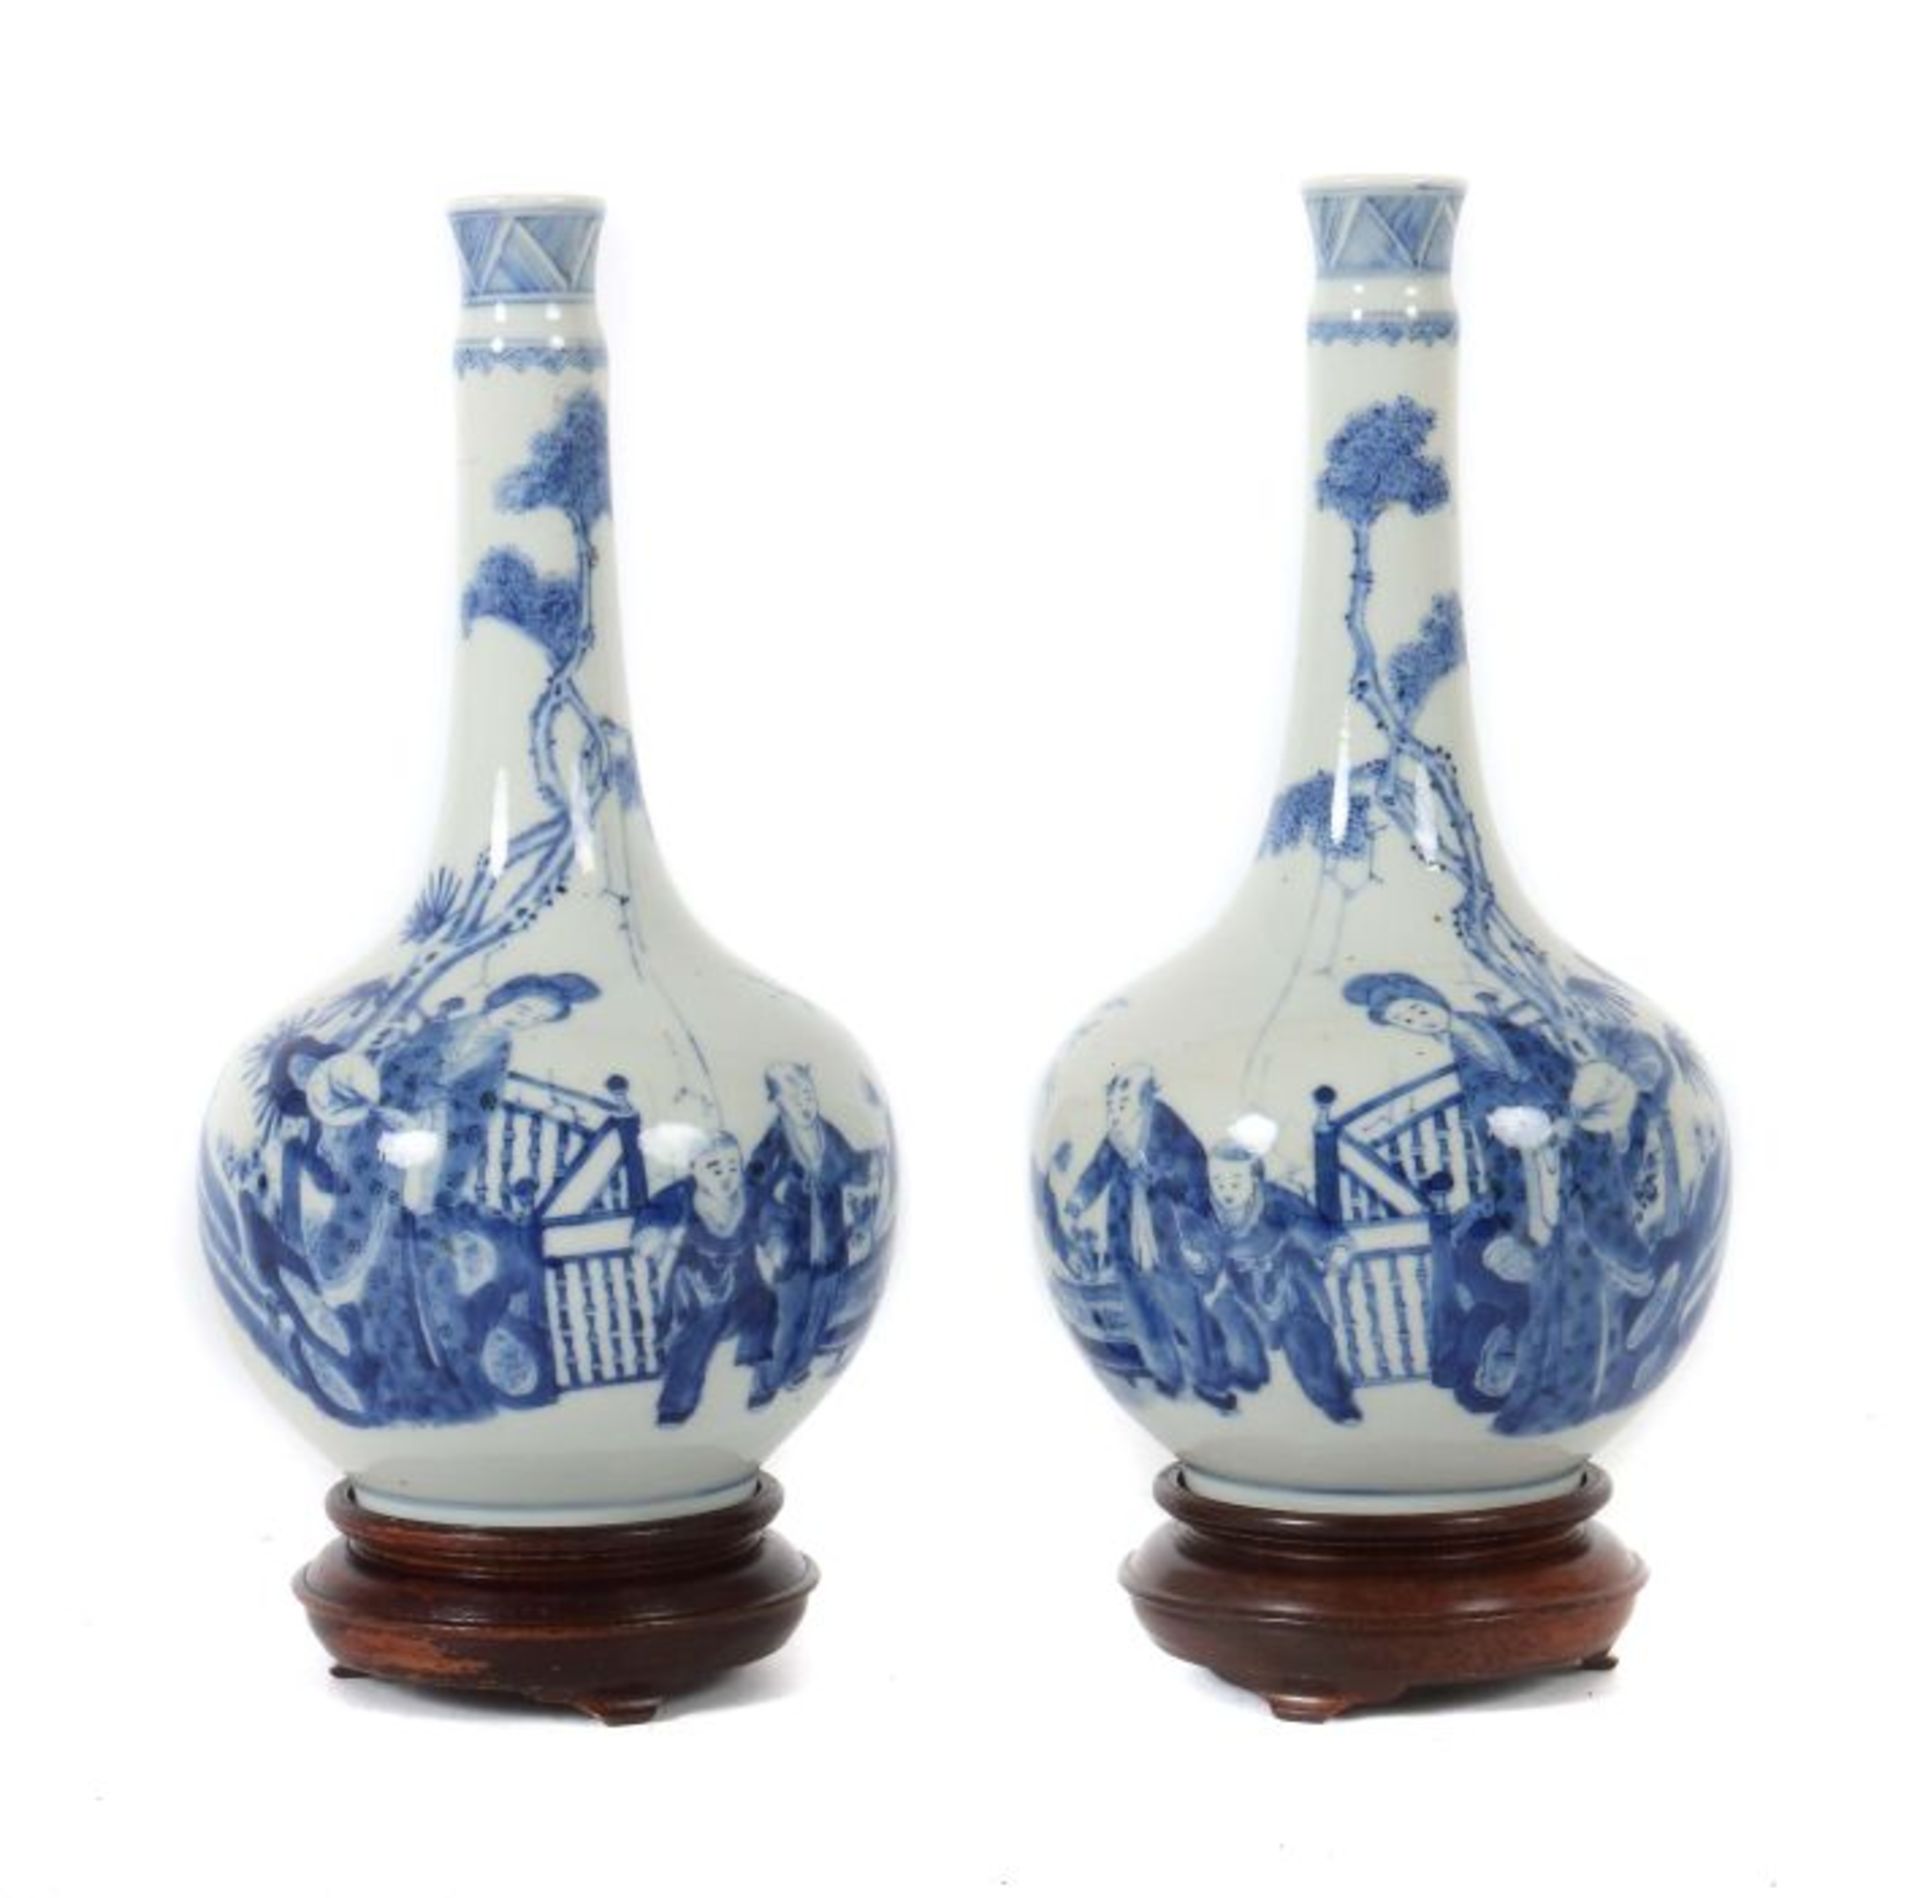 Vasenpaar China, 19. Jh., Porzellan, Blaumalerei, gespiegelte Szene einer Dame, einen Fächer haltend